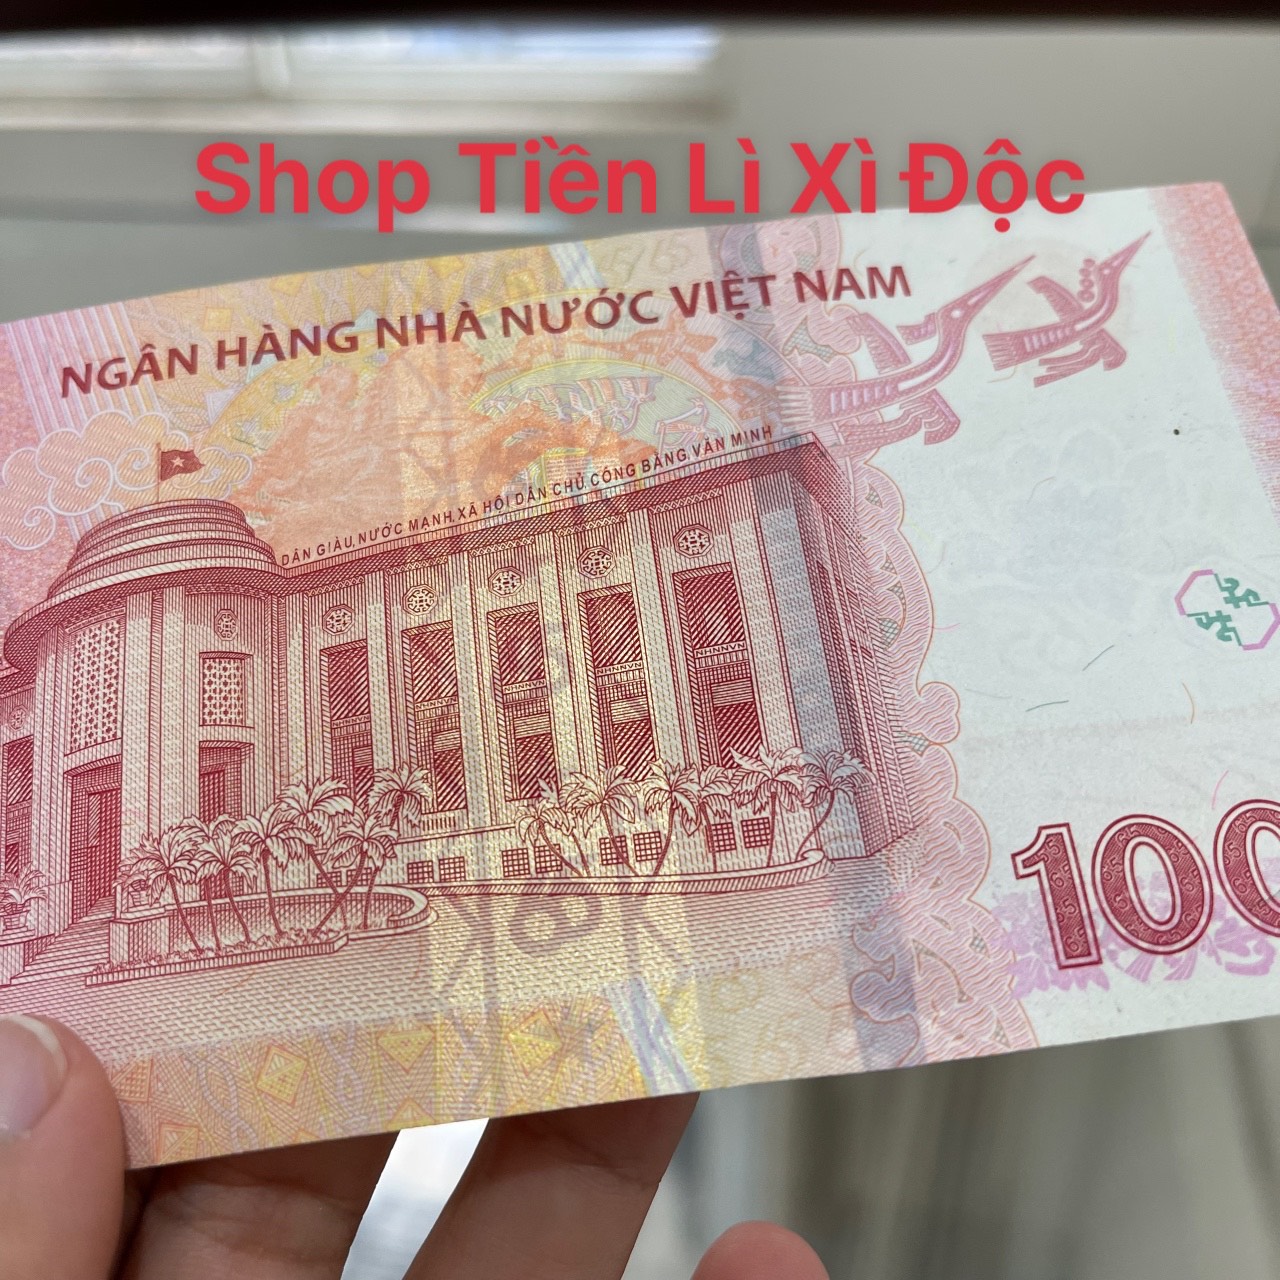 Hãy chiêm ngưỡng hình ảnh đồng tiền 100 đồng với những họa tiết độc đáo và tinh tế, nó là biểu tượng của sự đoàn kết và sự kiên trì của người dân Việt Nam.